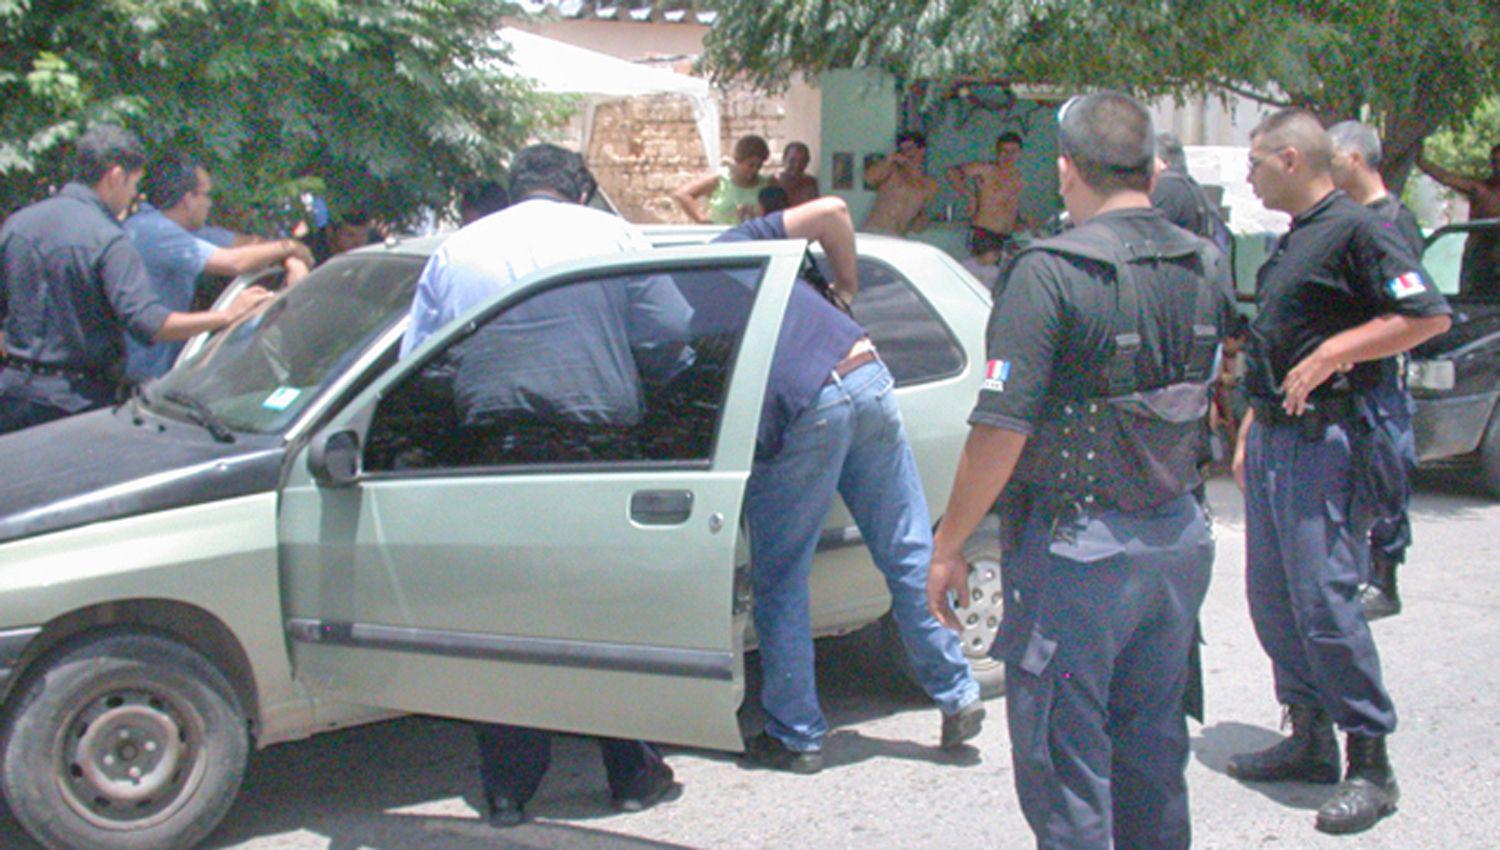 Espectacular persecucioacuten de auto con cuatro ocupantes que efectuaron disparos